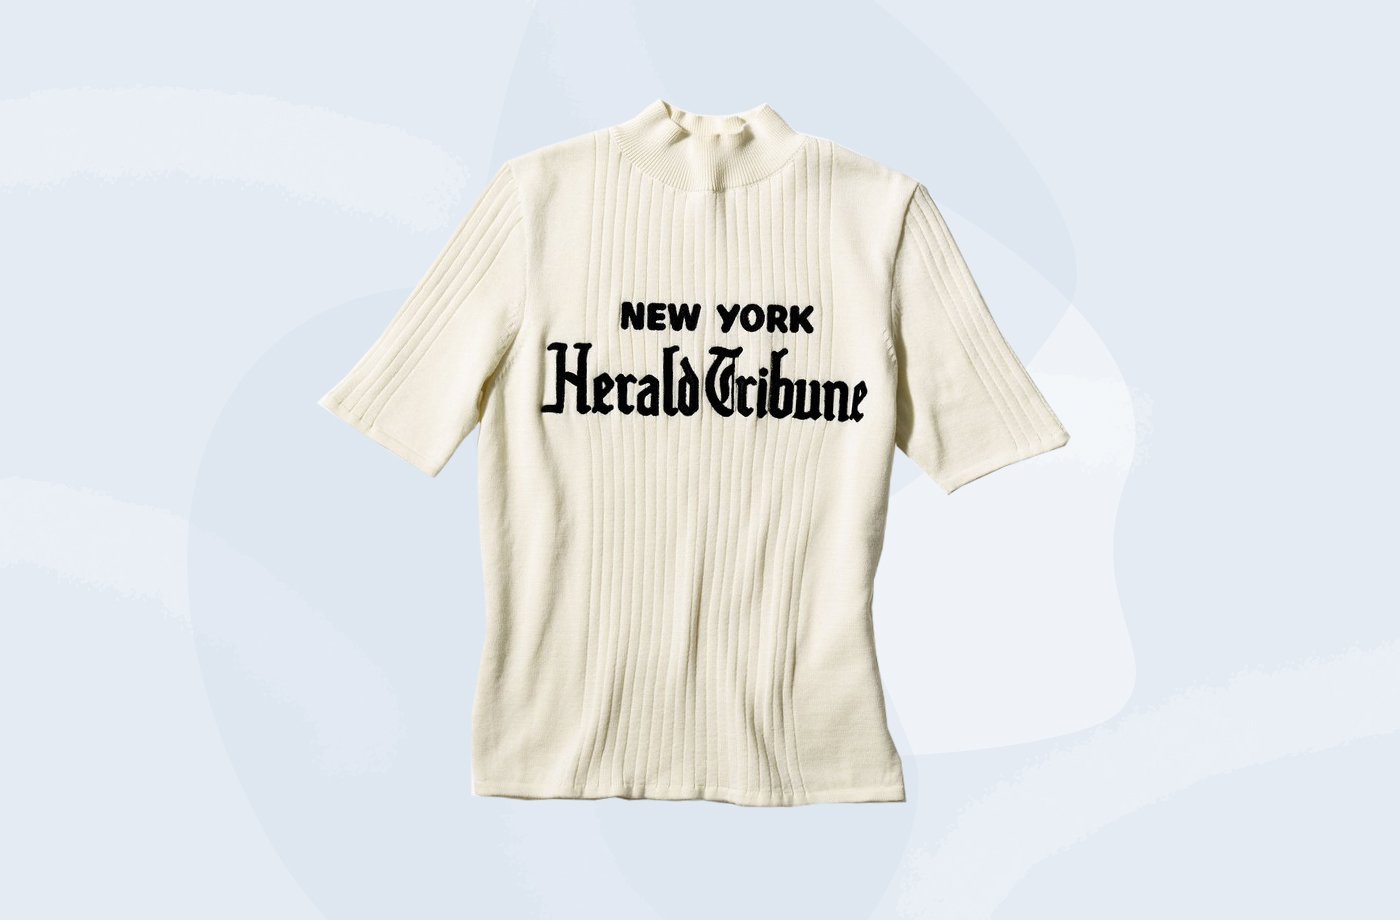 new york times merchandise store new york herald tribune shirt